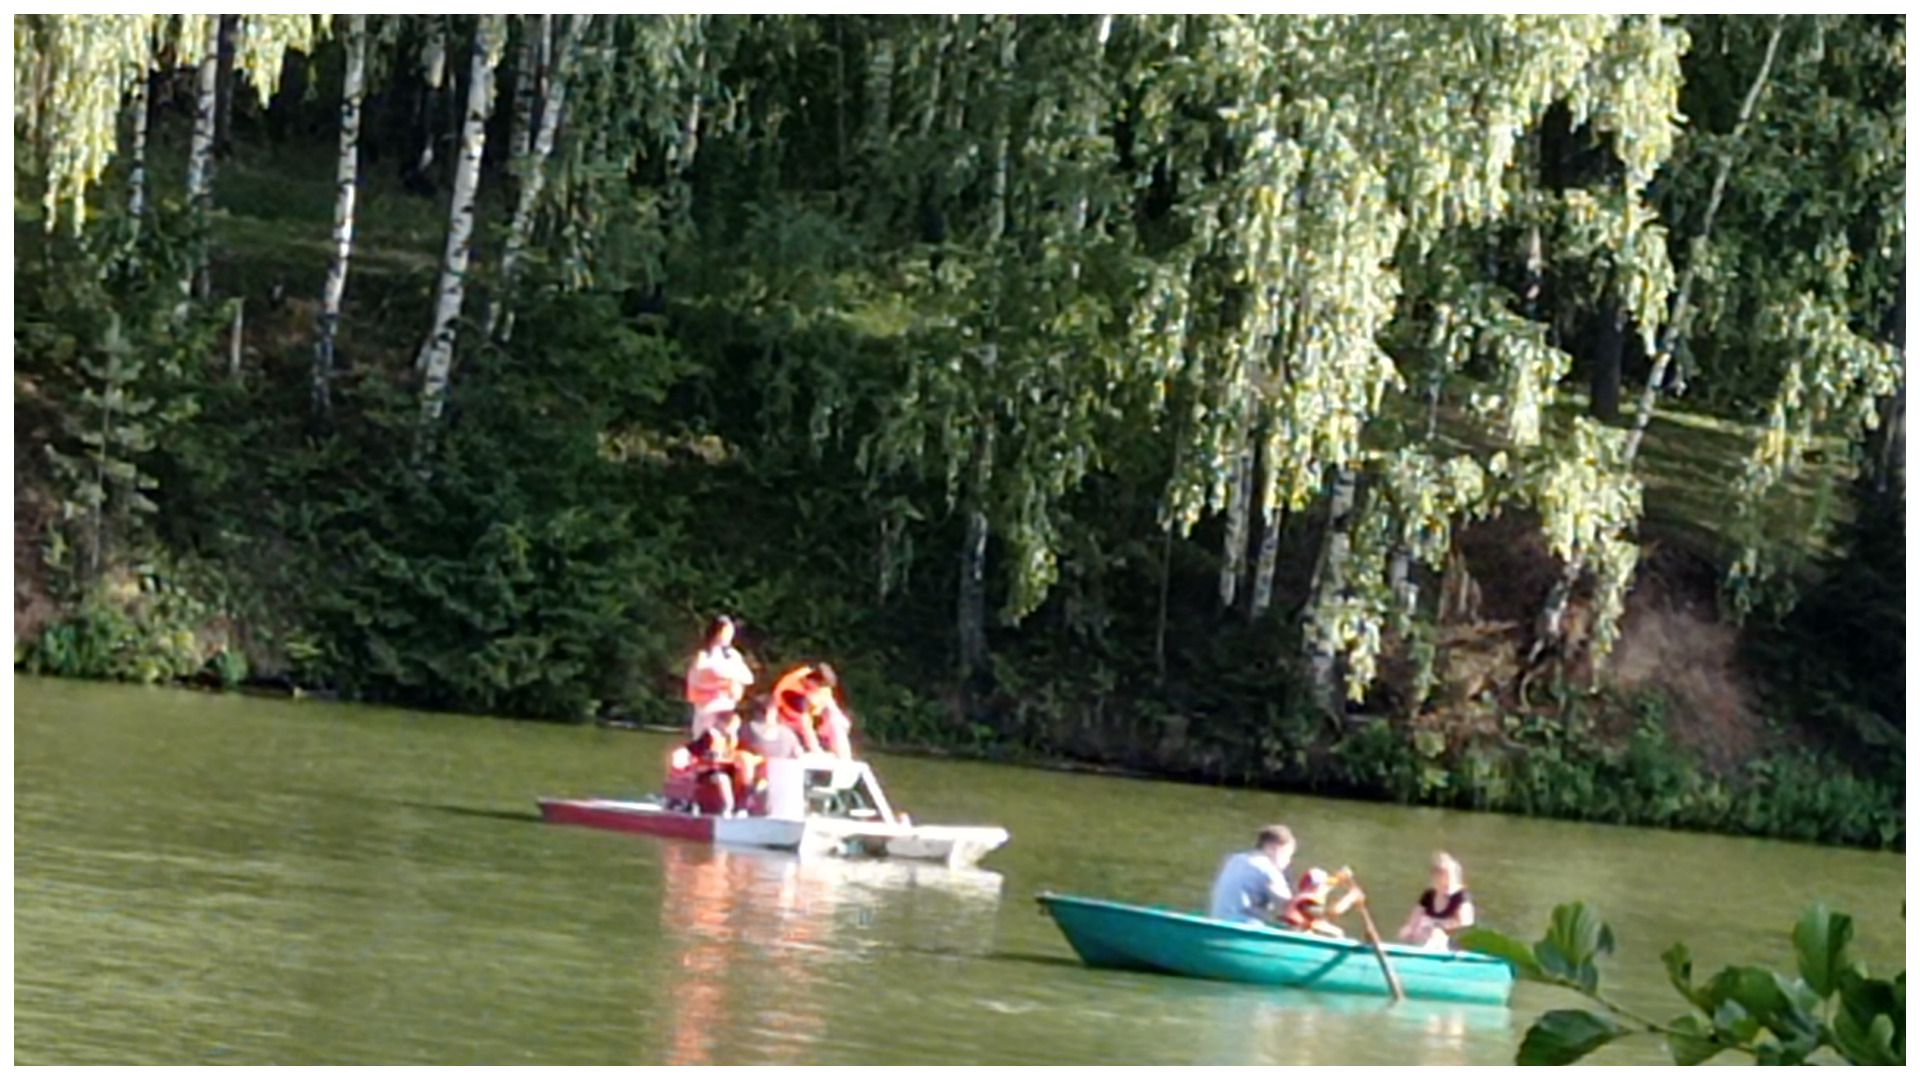 Посетители парка катаются на лодках по реке "Харинка" в акватории.